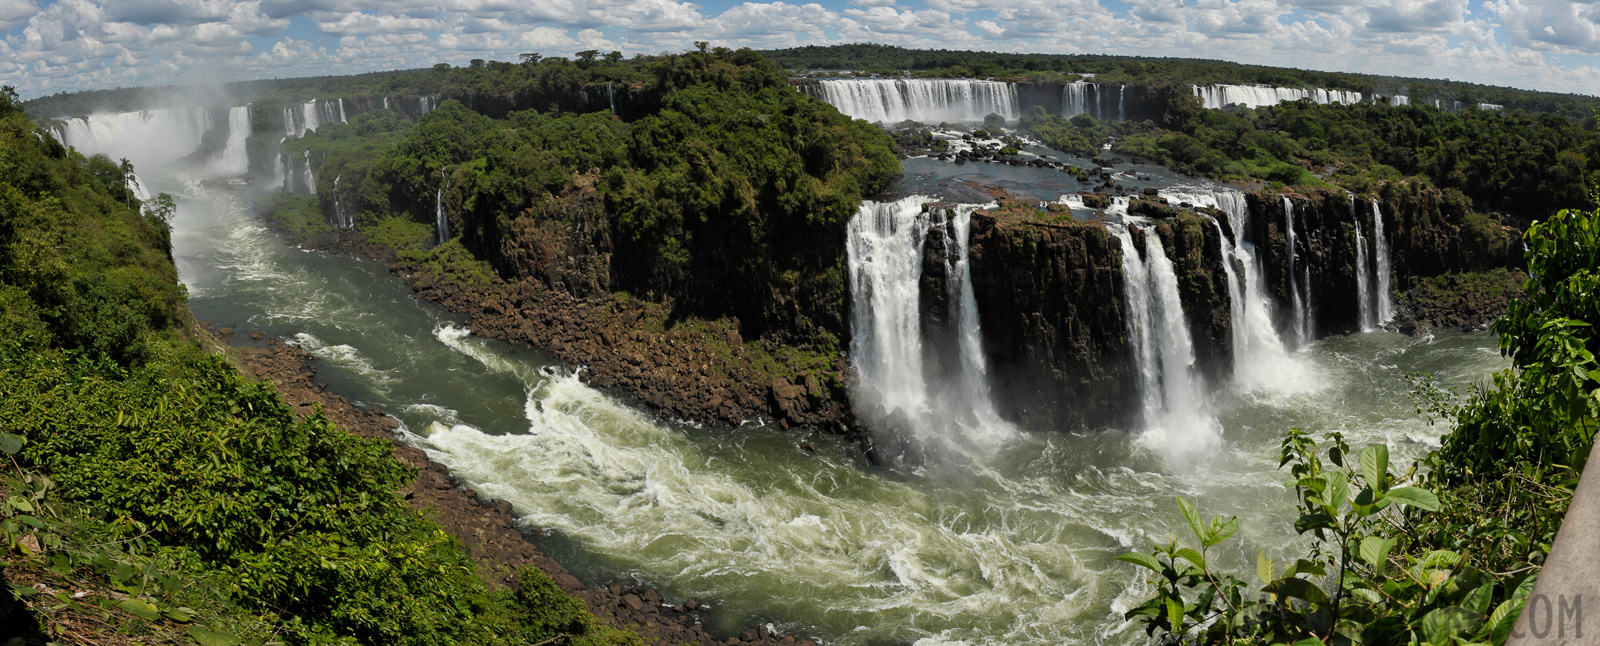 Cataratas del Iguazu [28 mm, 1/500 sec at f / 16, ISO 400]